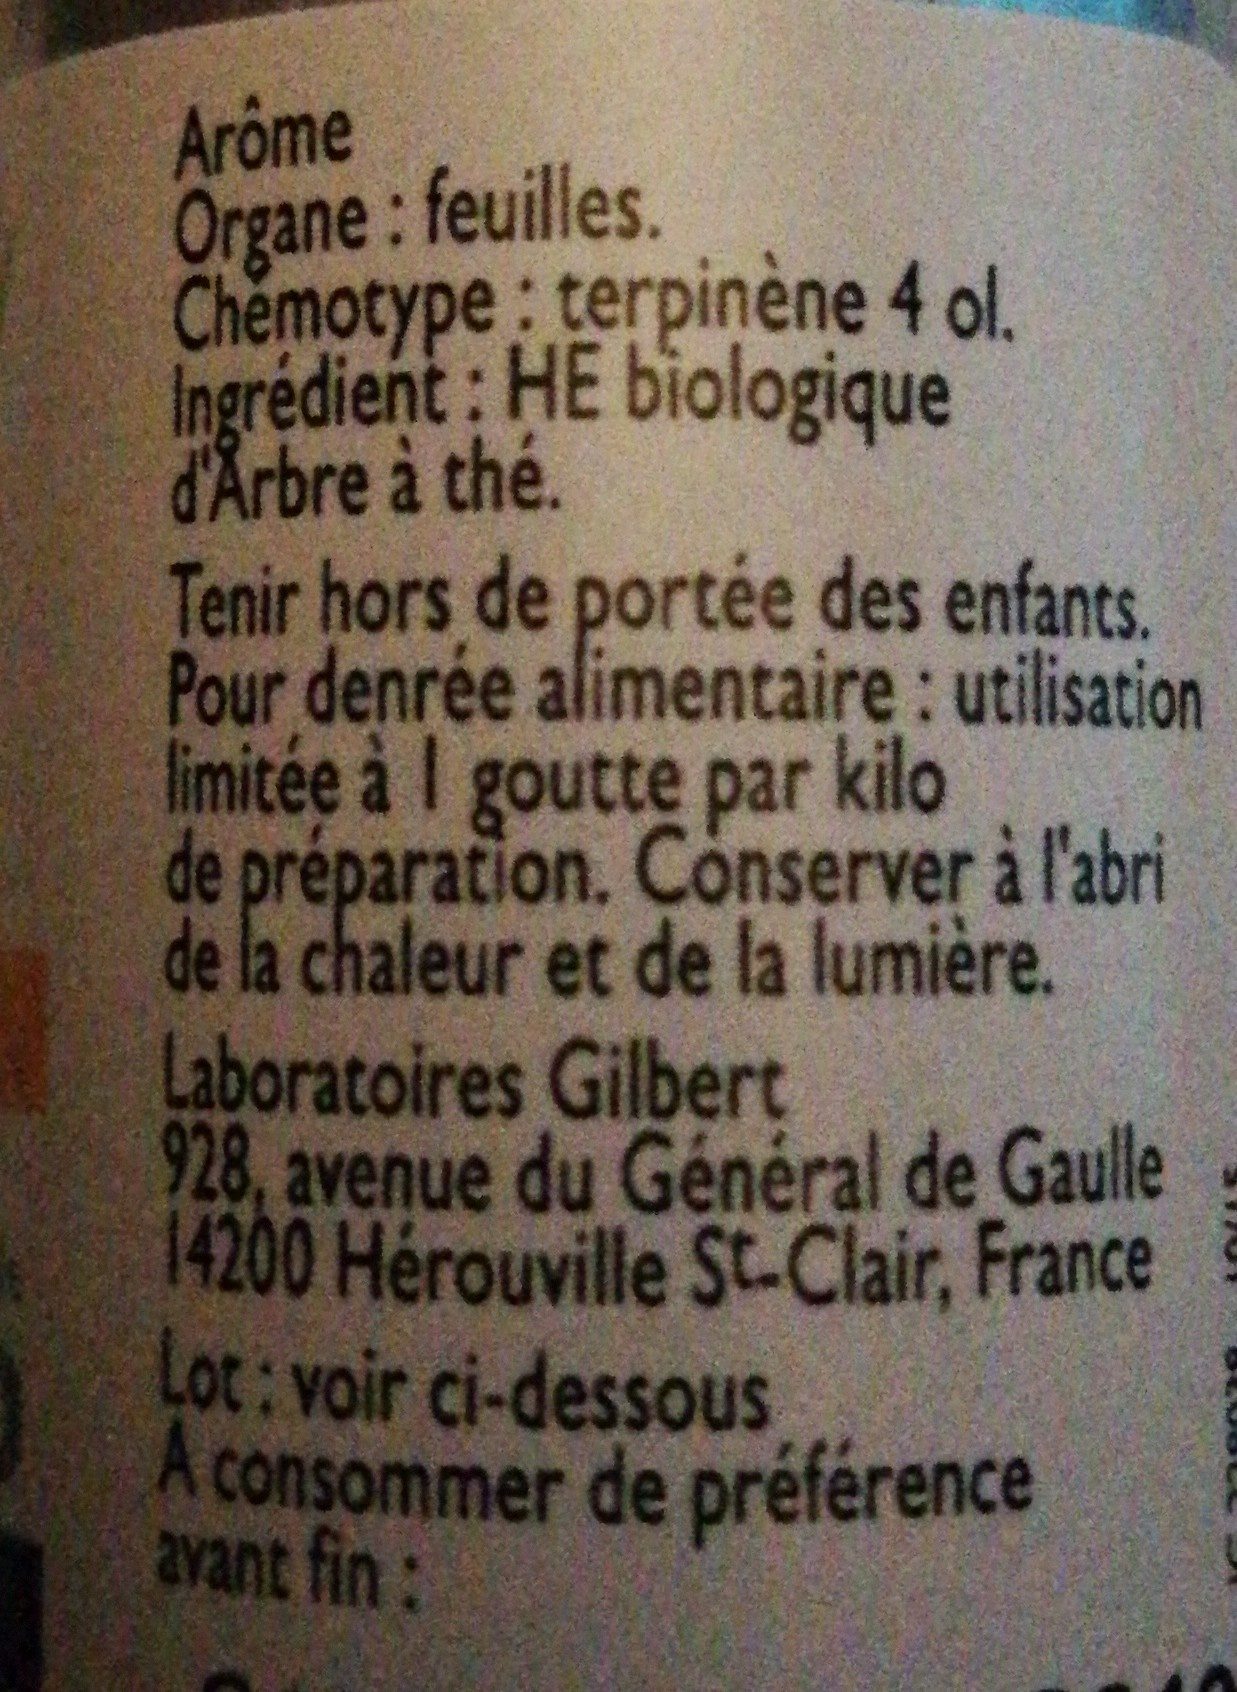 Huile Essentielle Bio Arbre A Thé - Ingredients - fr